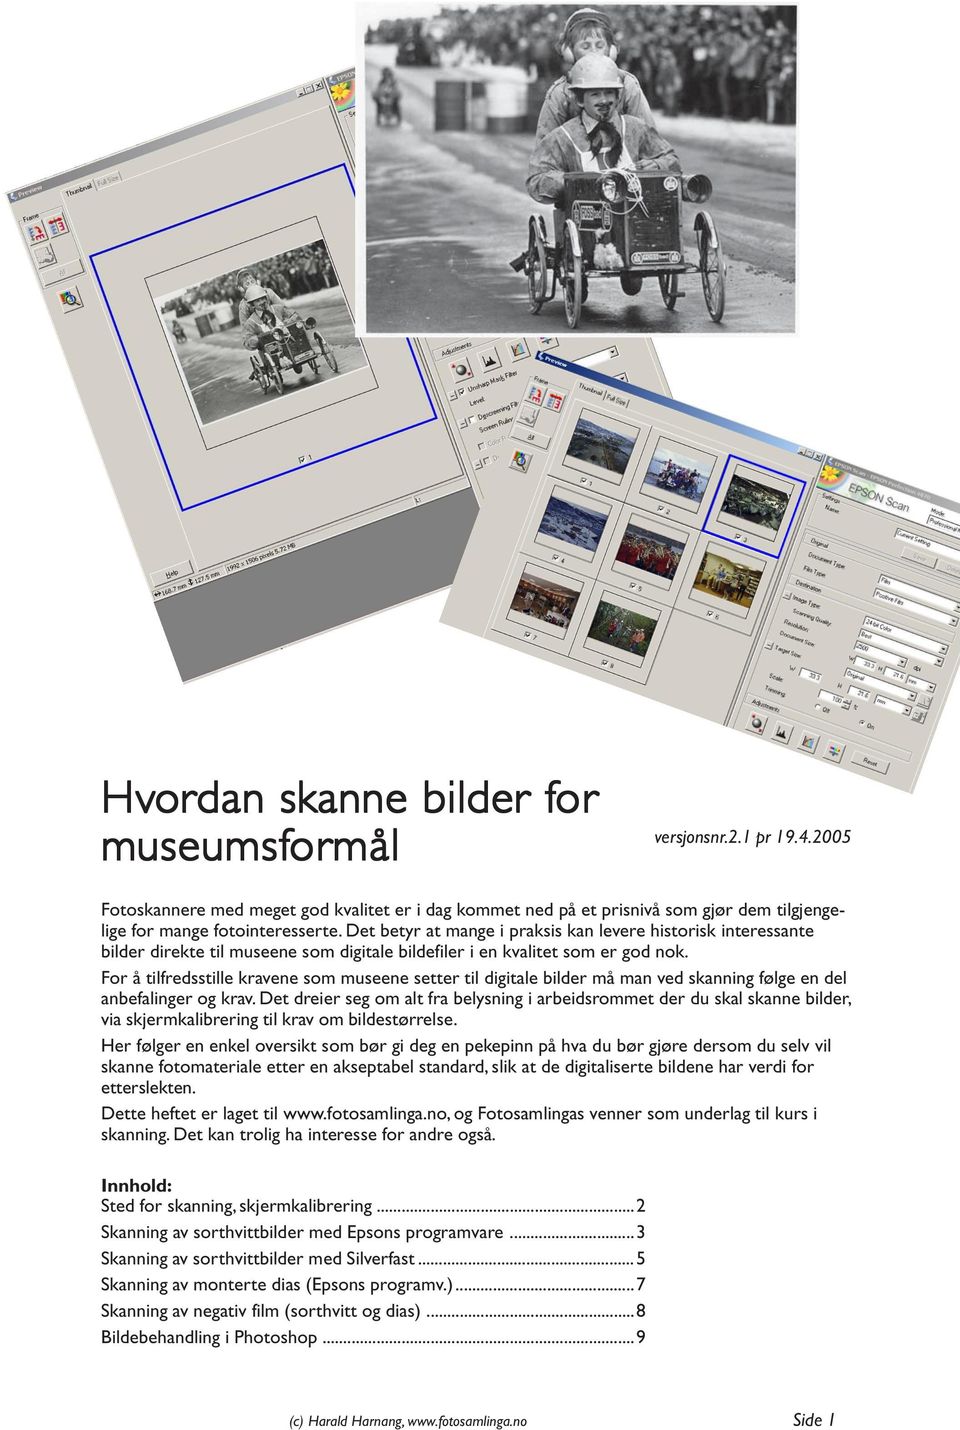 Det betyr at mange i praksis kan levere historisk interessante bilder direkte til museene som digitale bildefiler i en kvalitet som er god nok.